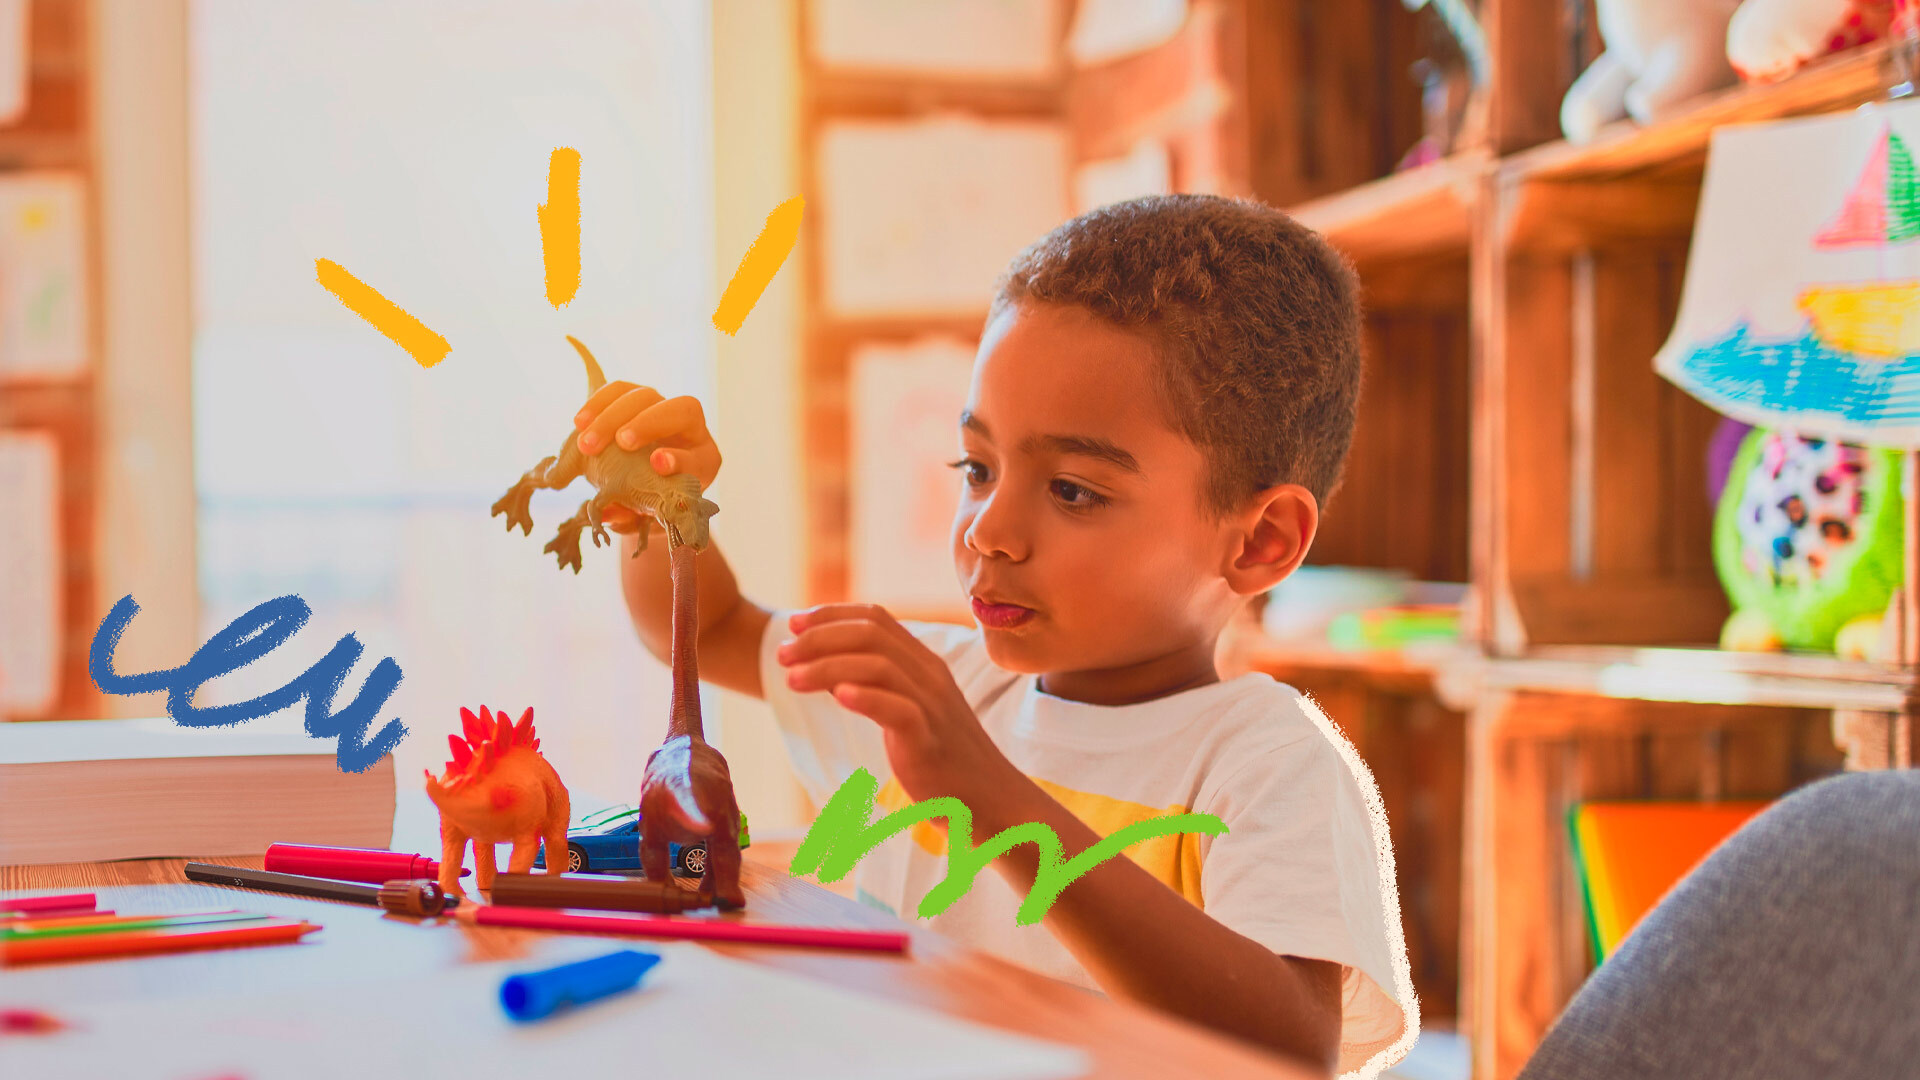 Foto de um menino brincando com seus dinossauros de plástico em cima de uma mesa, onde há também lápis de cor e canetinhas